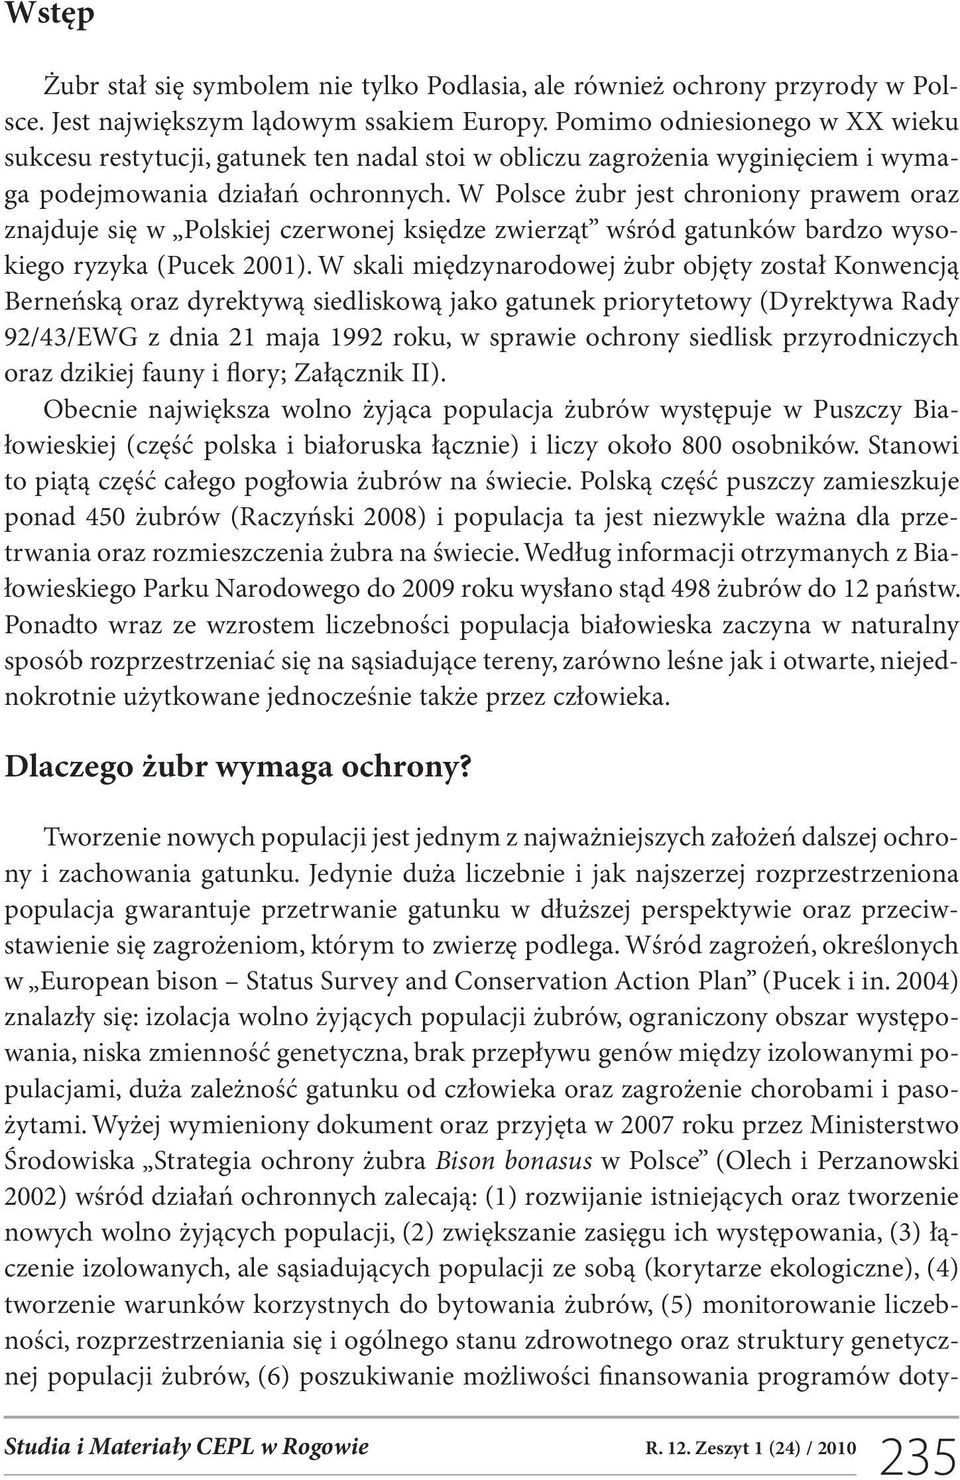 W Polsce żubr jest chroniony prawem oraz znajduje się w Polskiej czerwonej księdze zwierząt wśród gatunków bardzo wysokiego ryzyka (Pucek 2001).